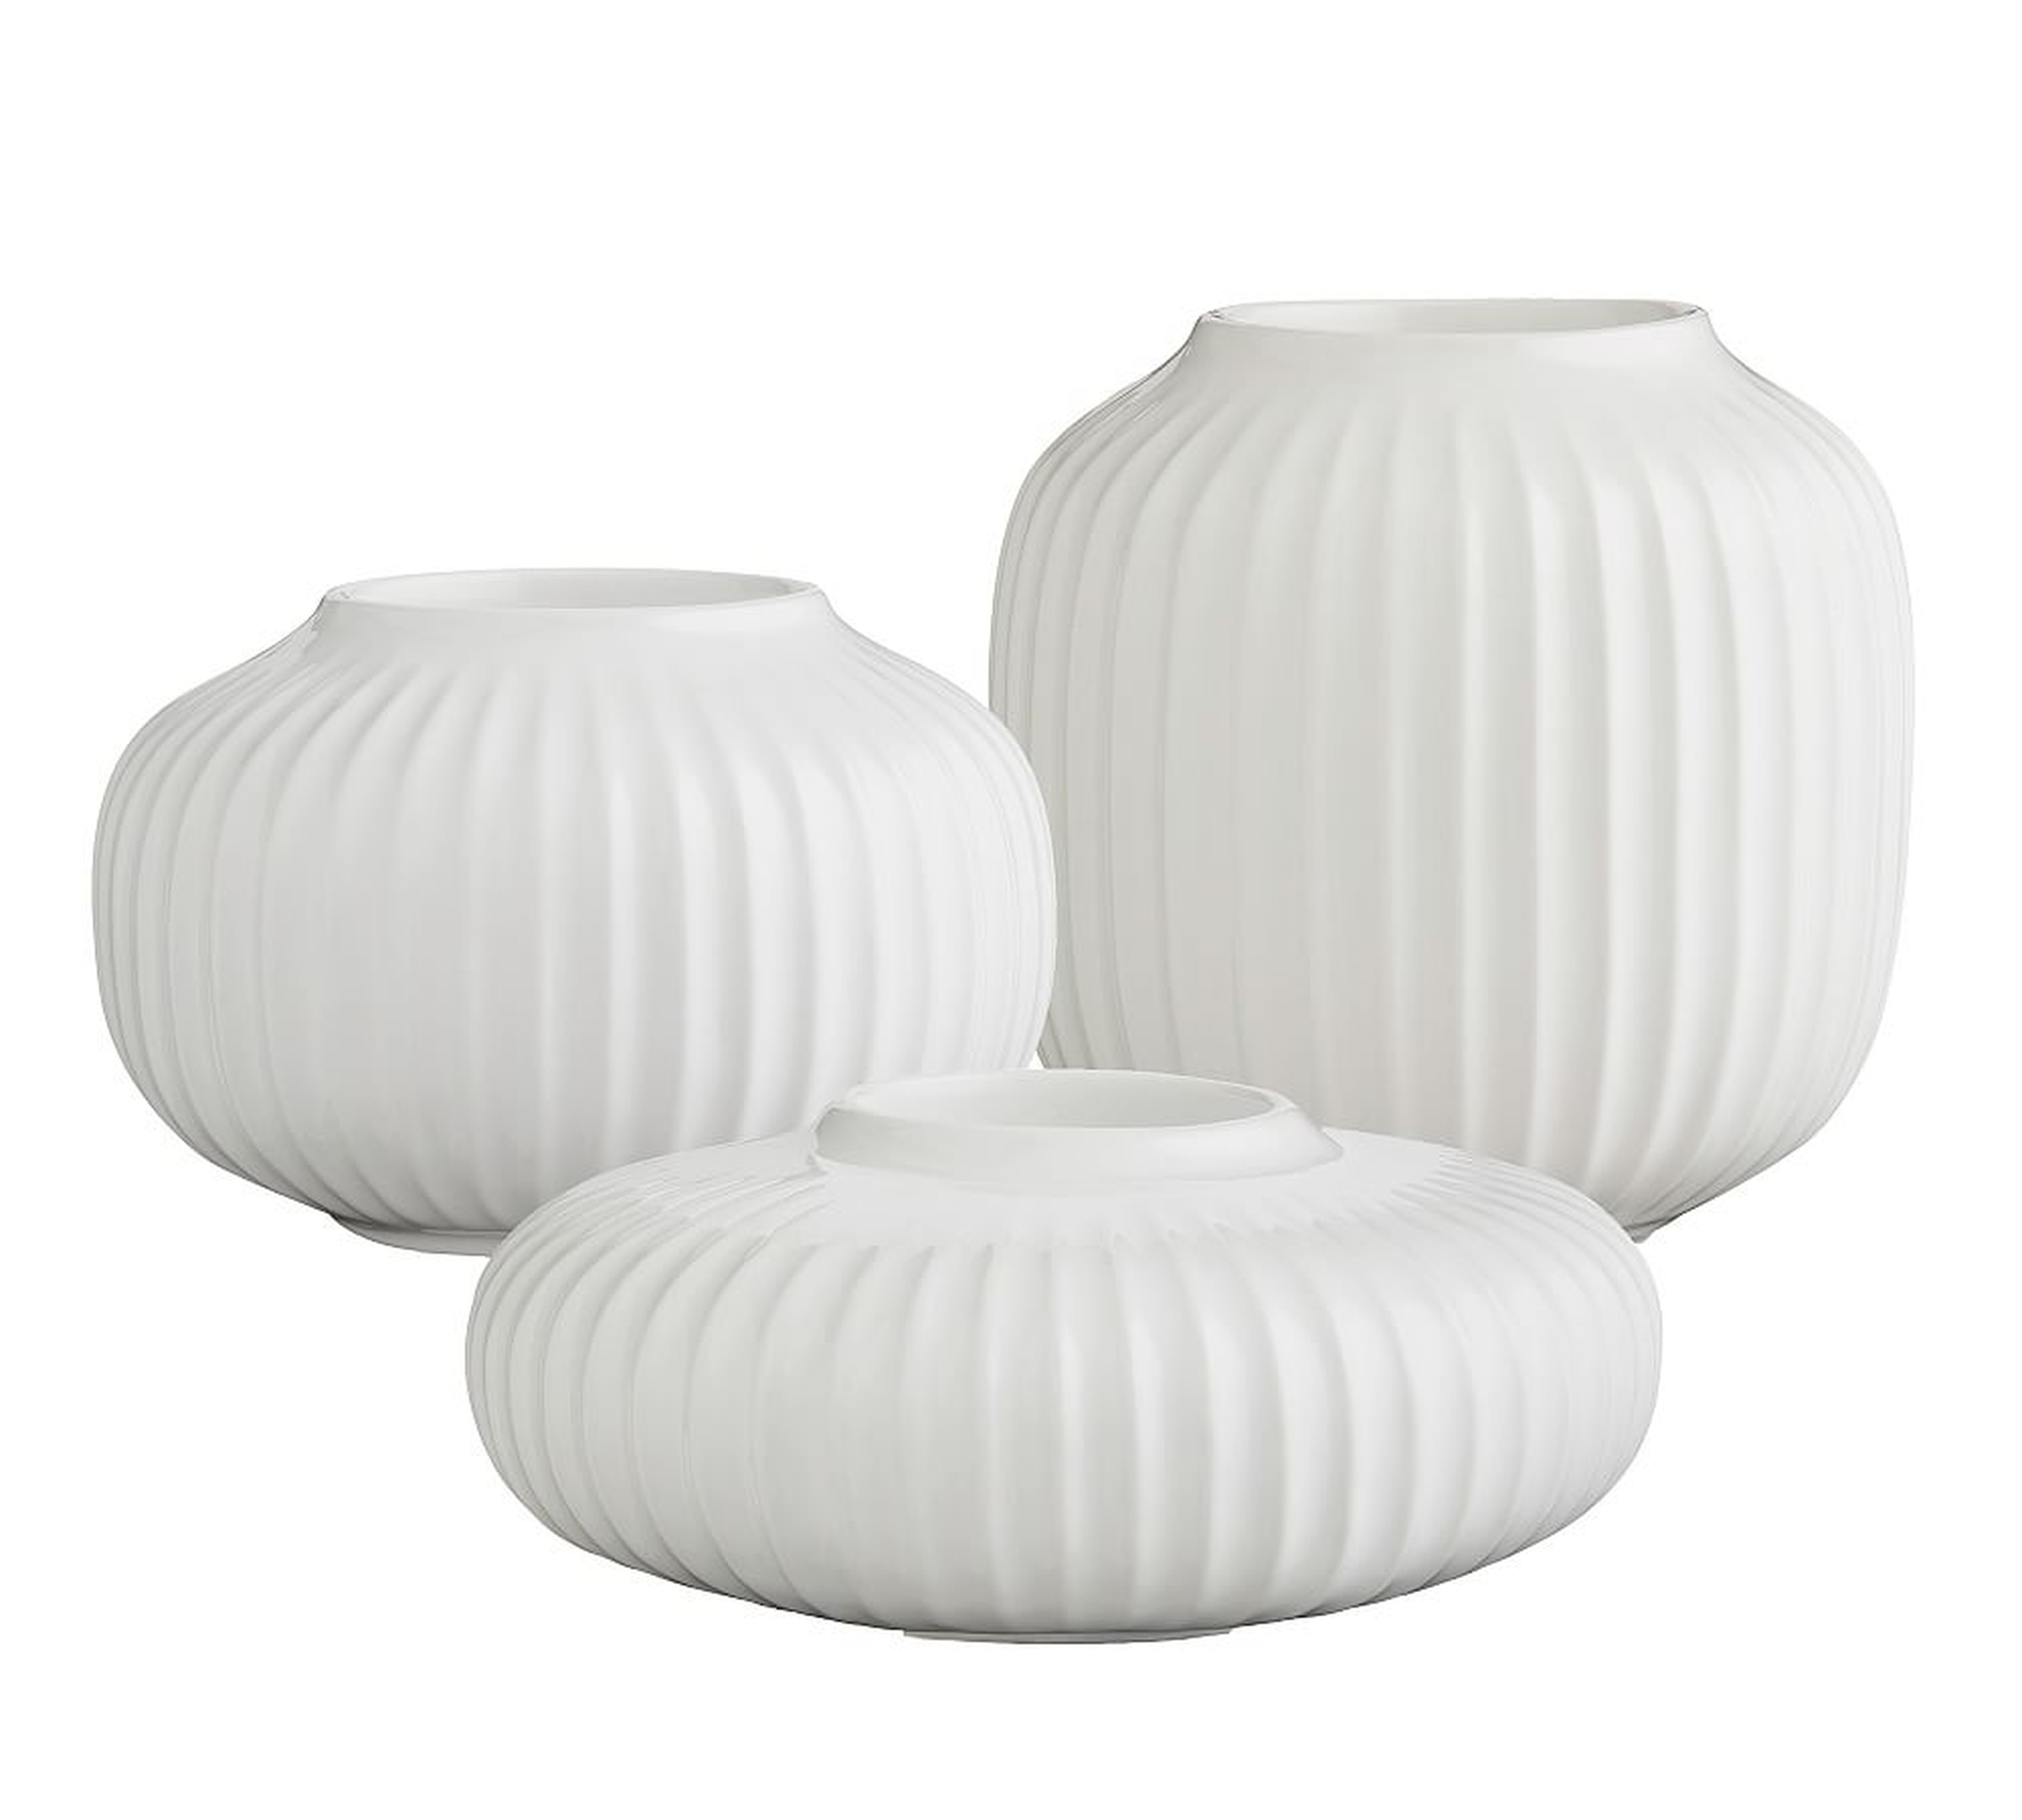 Kahler Hammershoi White Porcelain Tealight Holder, Set of 3 - Pottery Barn